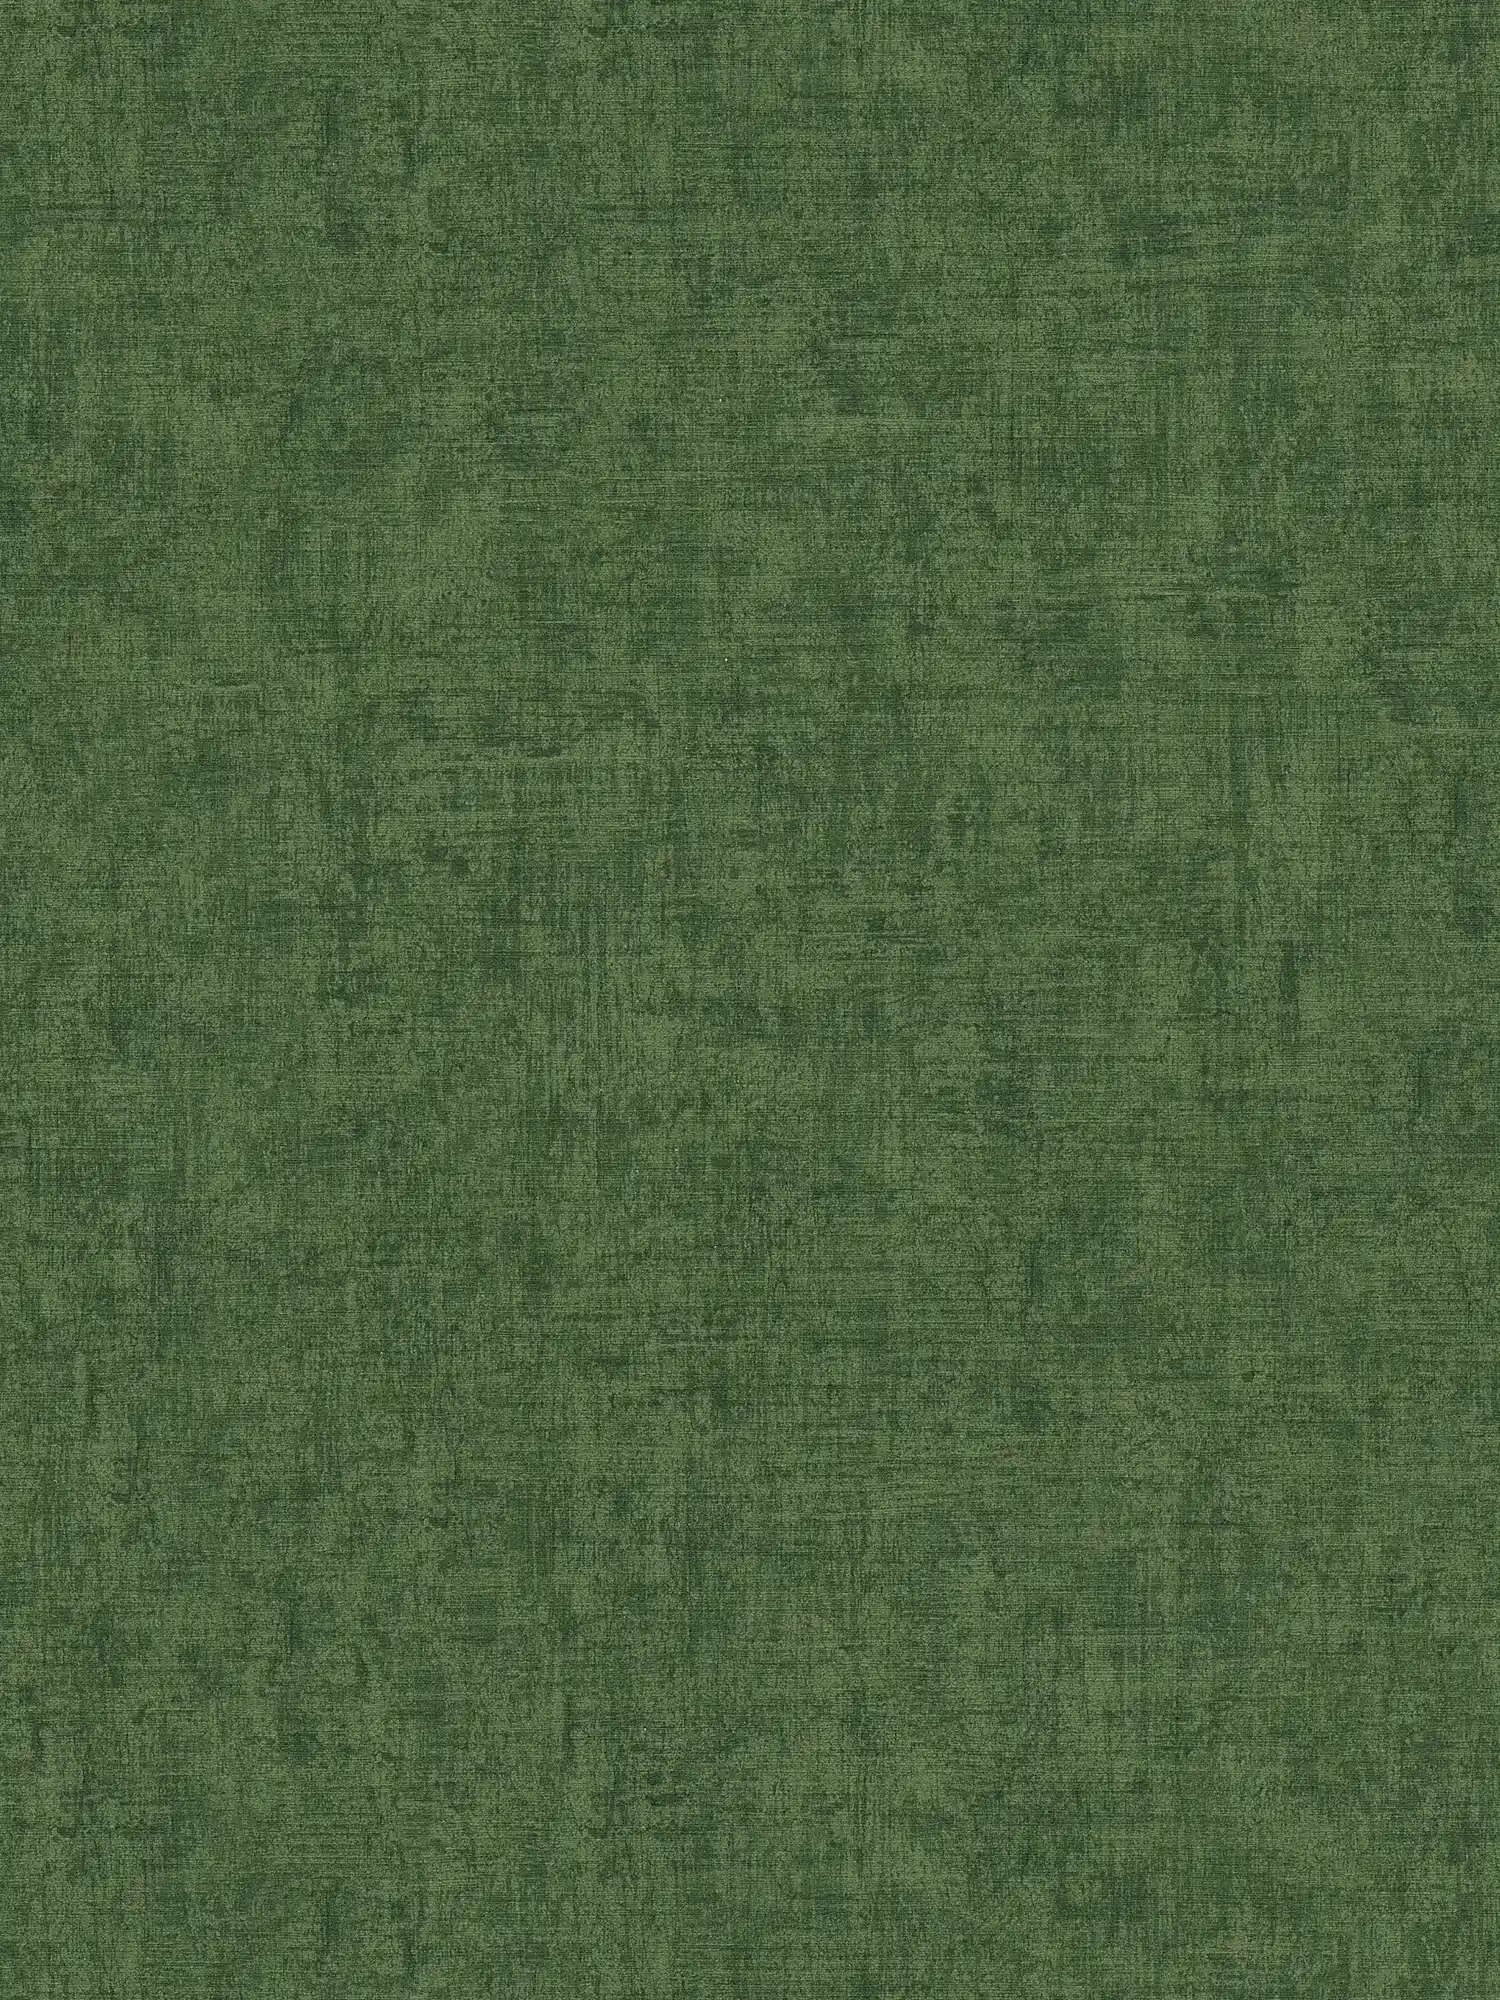 Melange unit behang jungle groen met structuur reliëf
